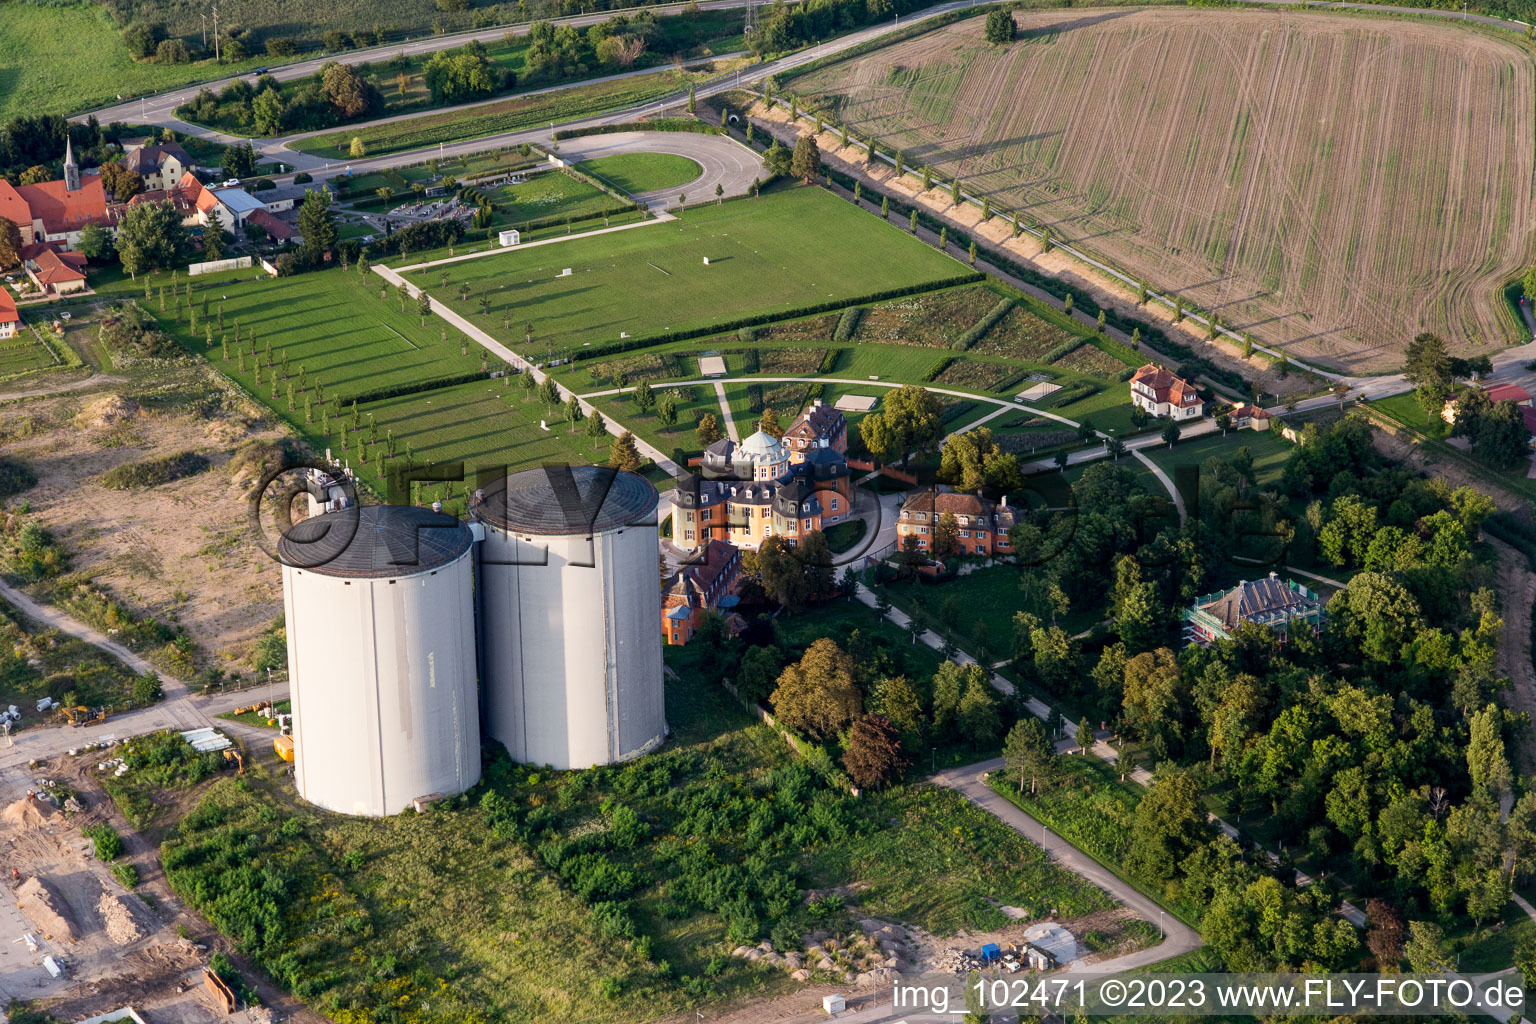 Waghäusel im Bundesland Baden-Württemberg, Deutschland aus der Luft betrachtet